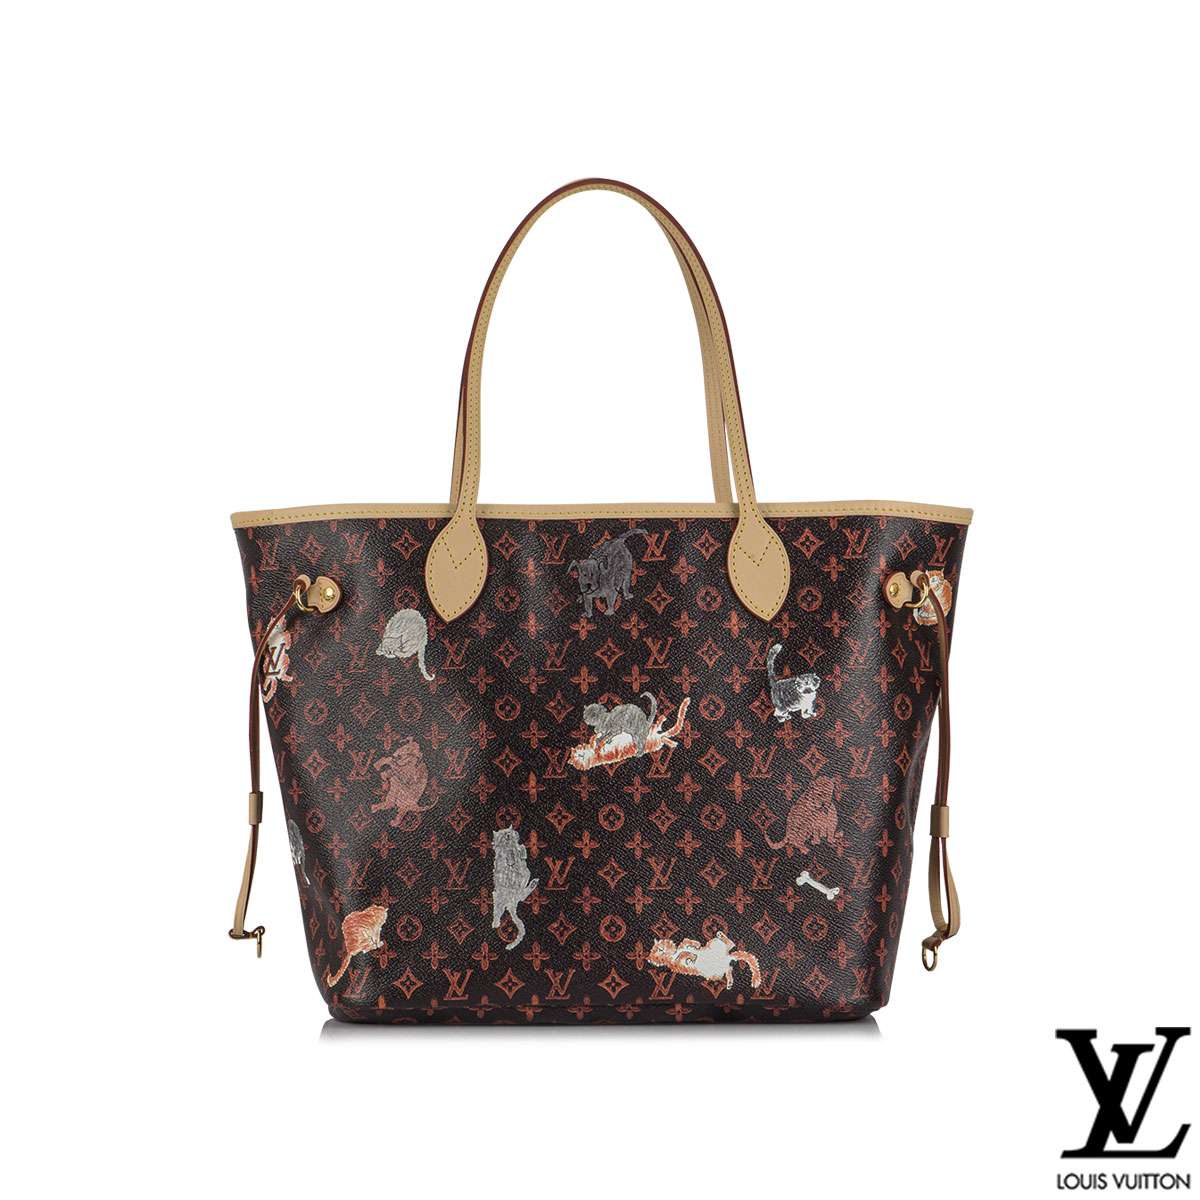 Louis Vuitton X Grace Coddington Catogram Neverfull MM Tote Bag | Rich Diamonds